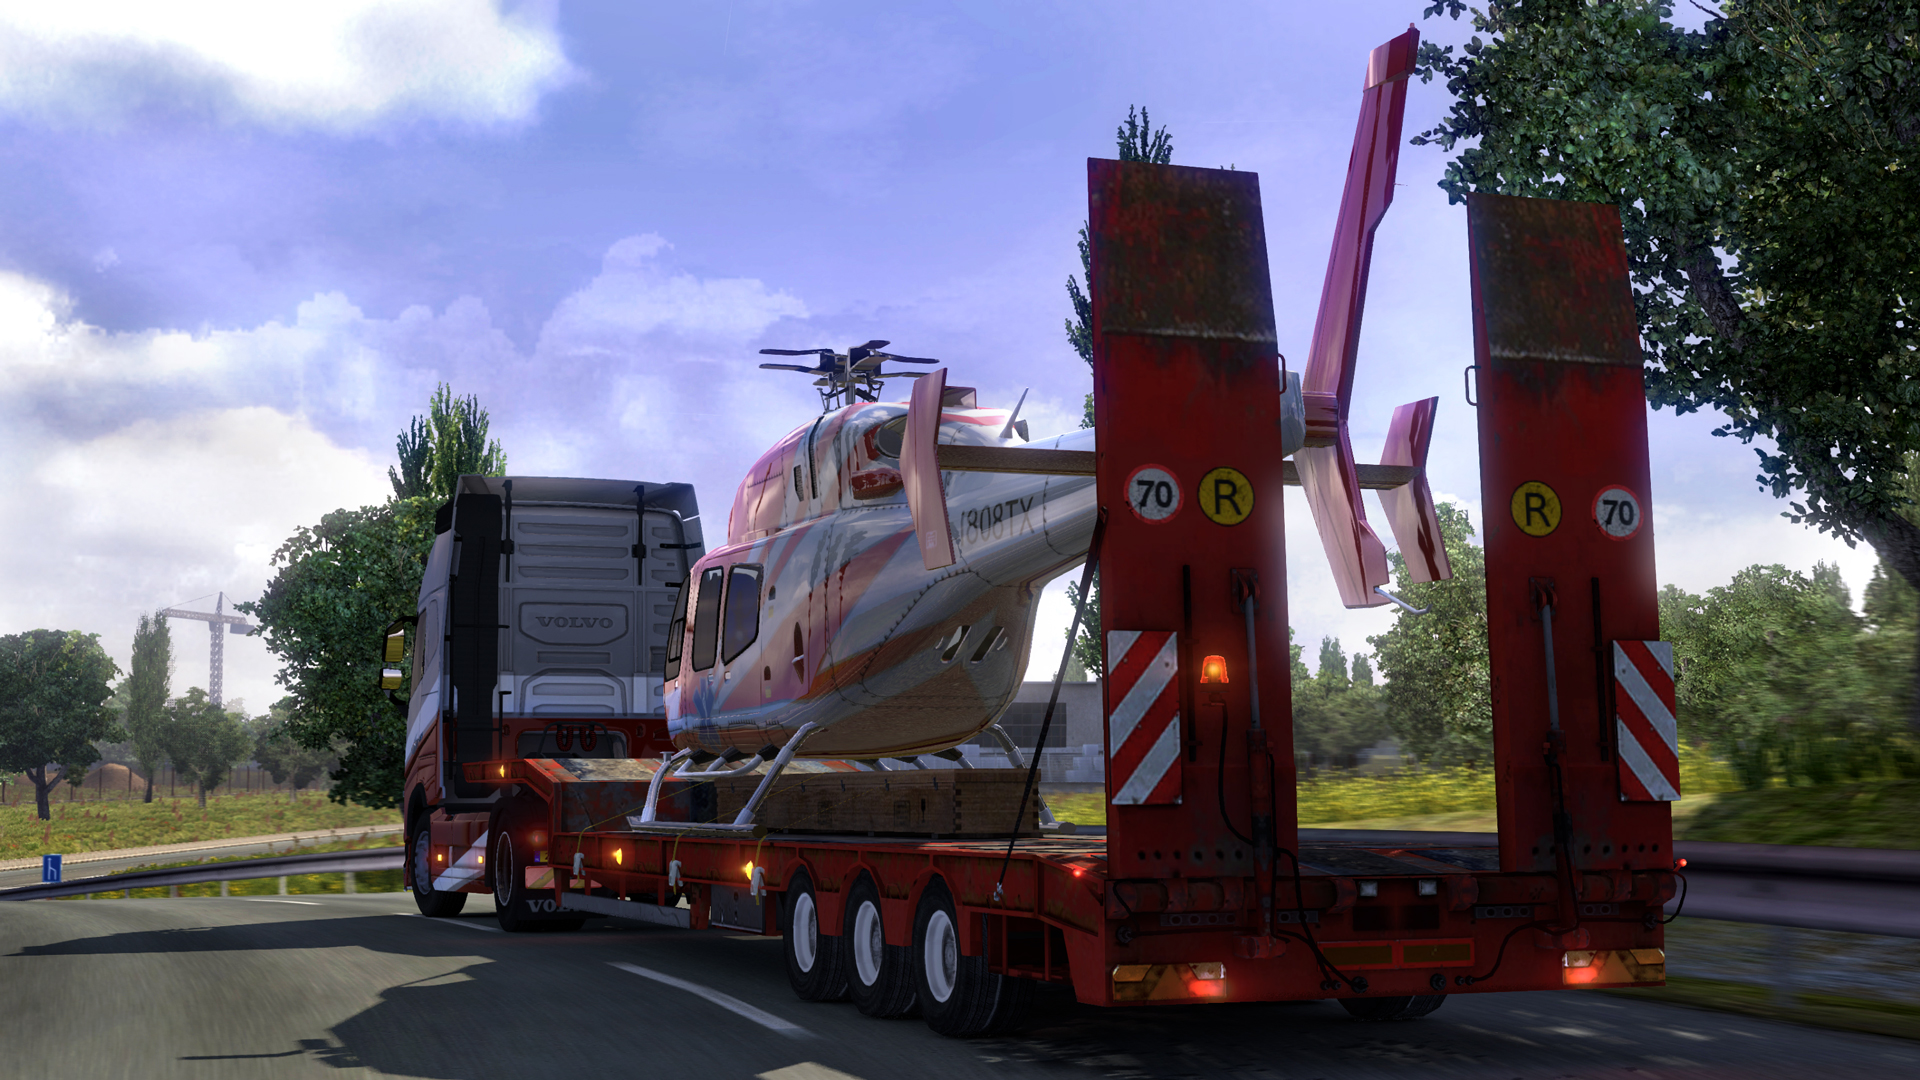 لعبة قيادة الشاحنات الرهيبة Euro Truck Simulator 2 تحتوى على 15 أضافة وأخر تحديث بحجم 950 Ss_52fac14584ee32a9b5c031cfe9257f300f52e1d7.1920x1080